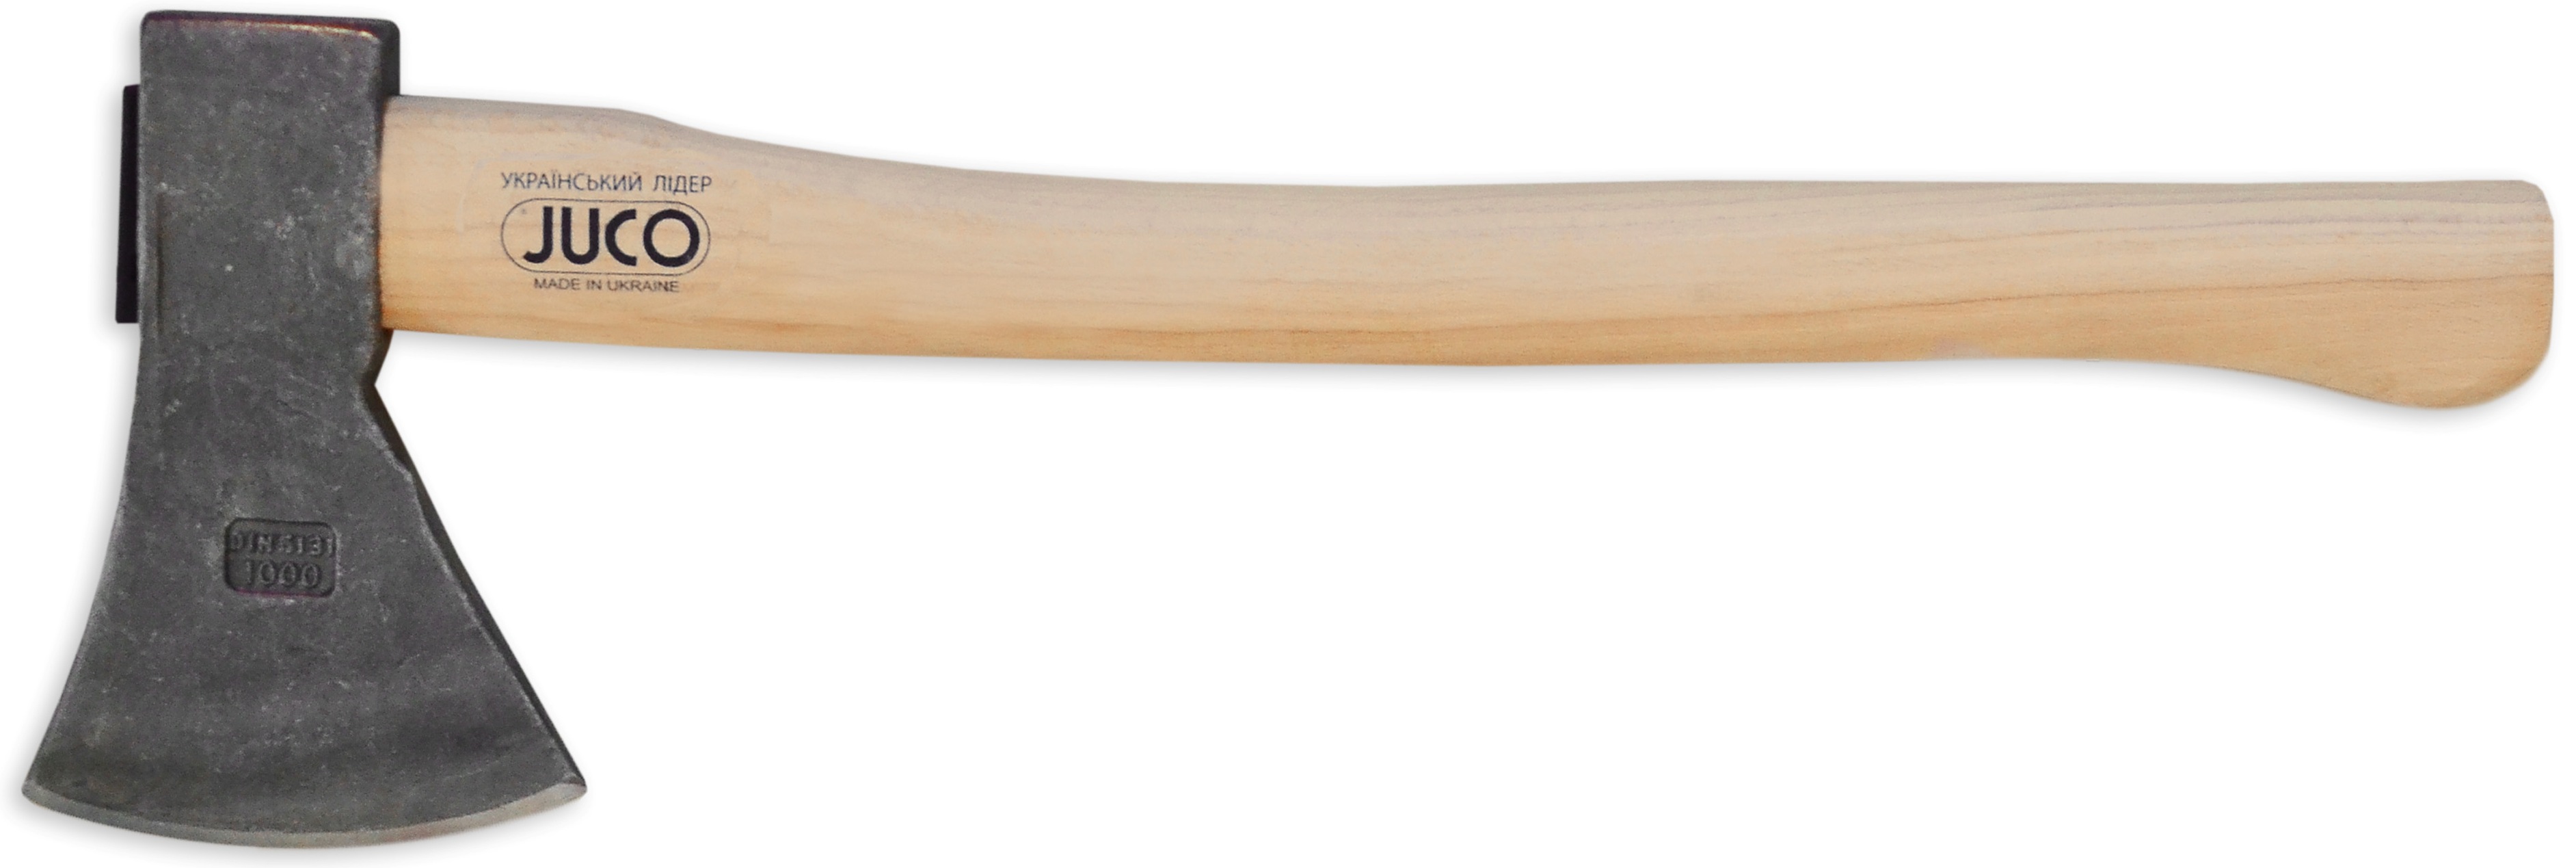 39-653 Топор с деревянной ручкой, JUCO (Украина), 400 г